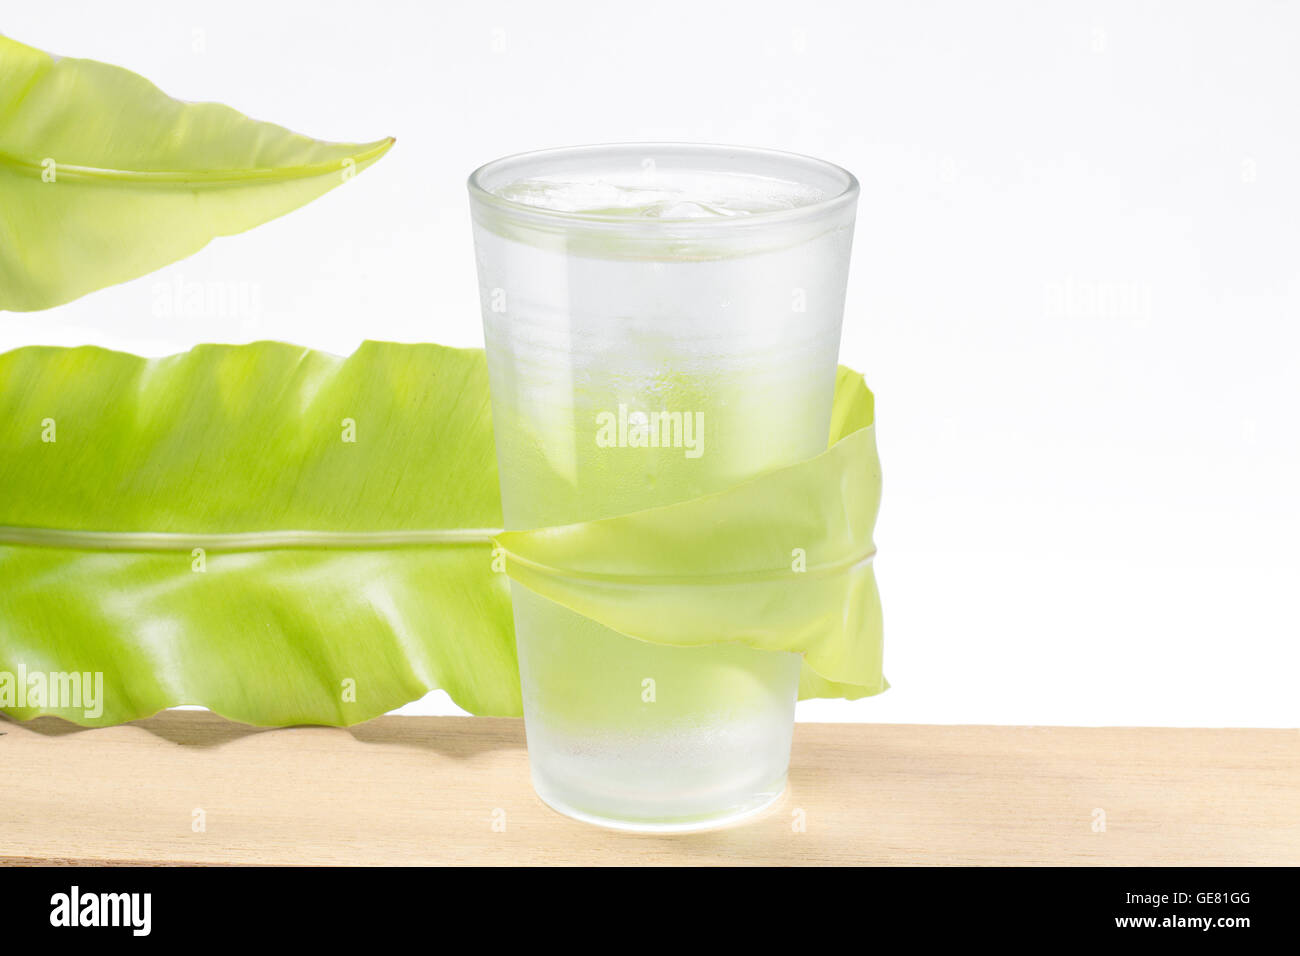 L'eau douce en verre avec feuille verte sur fond blanc Banque D'Images